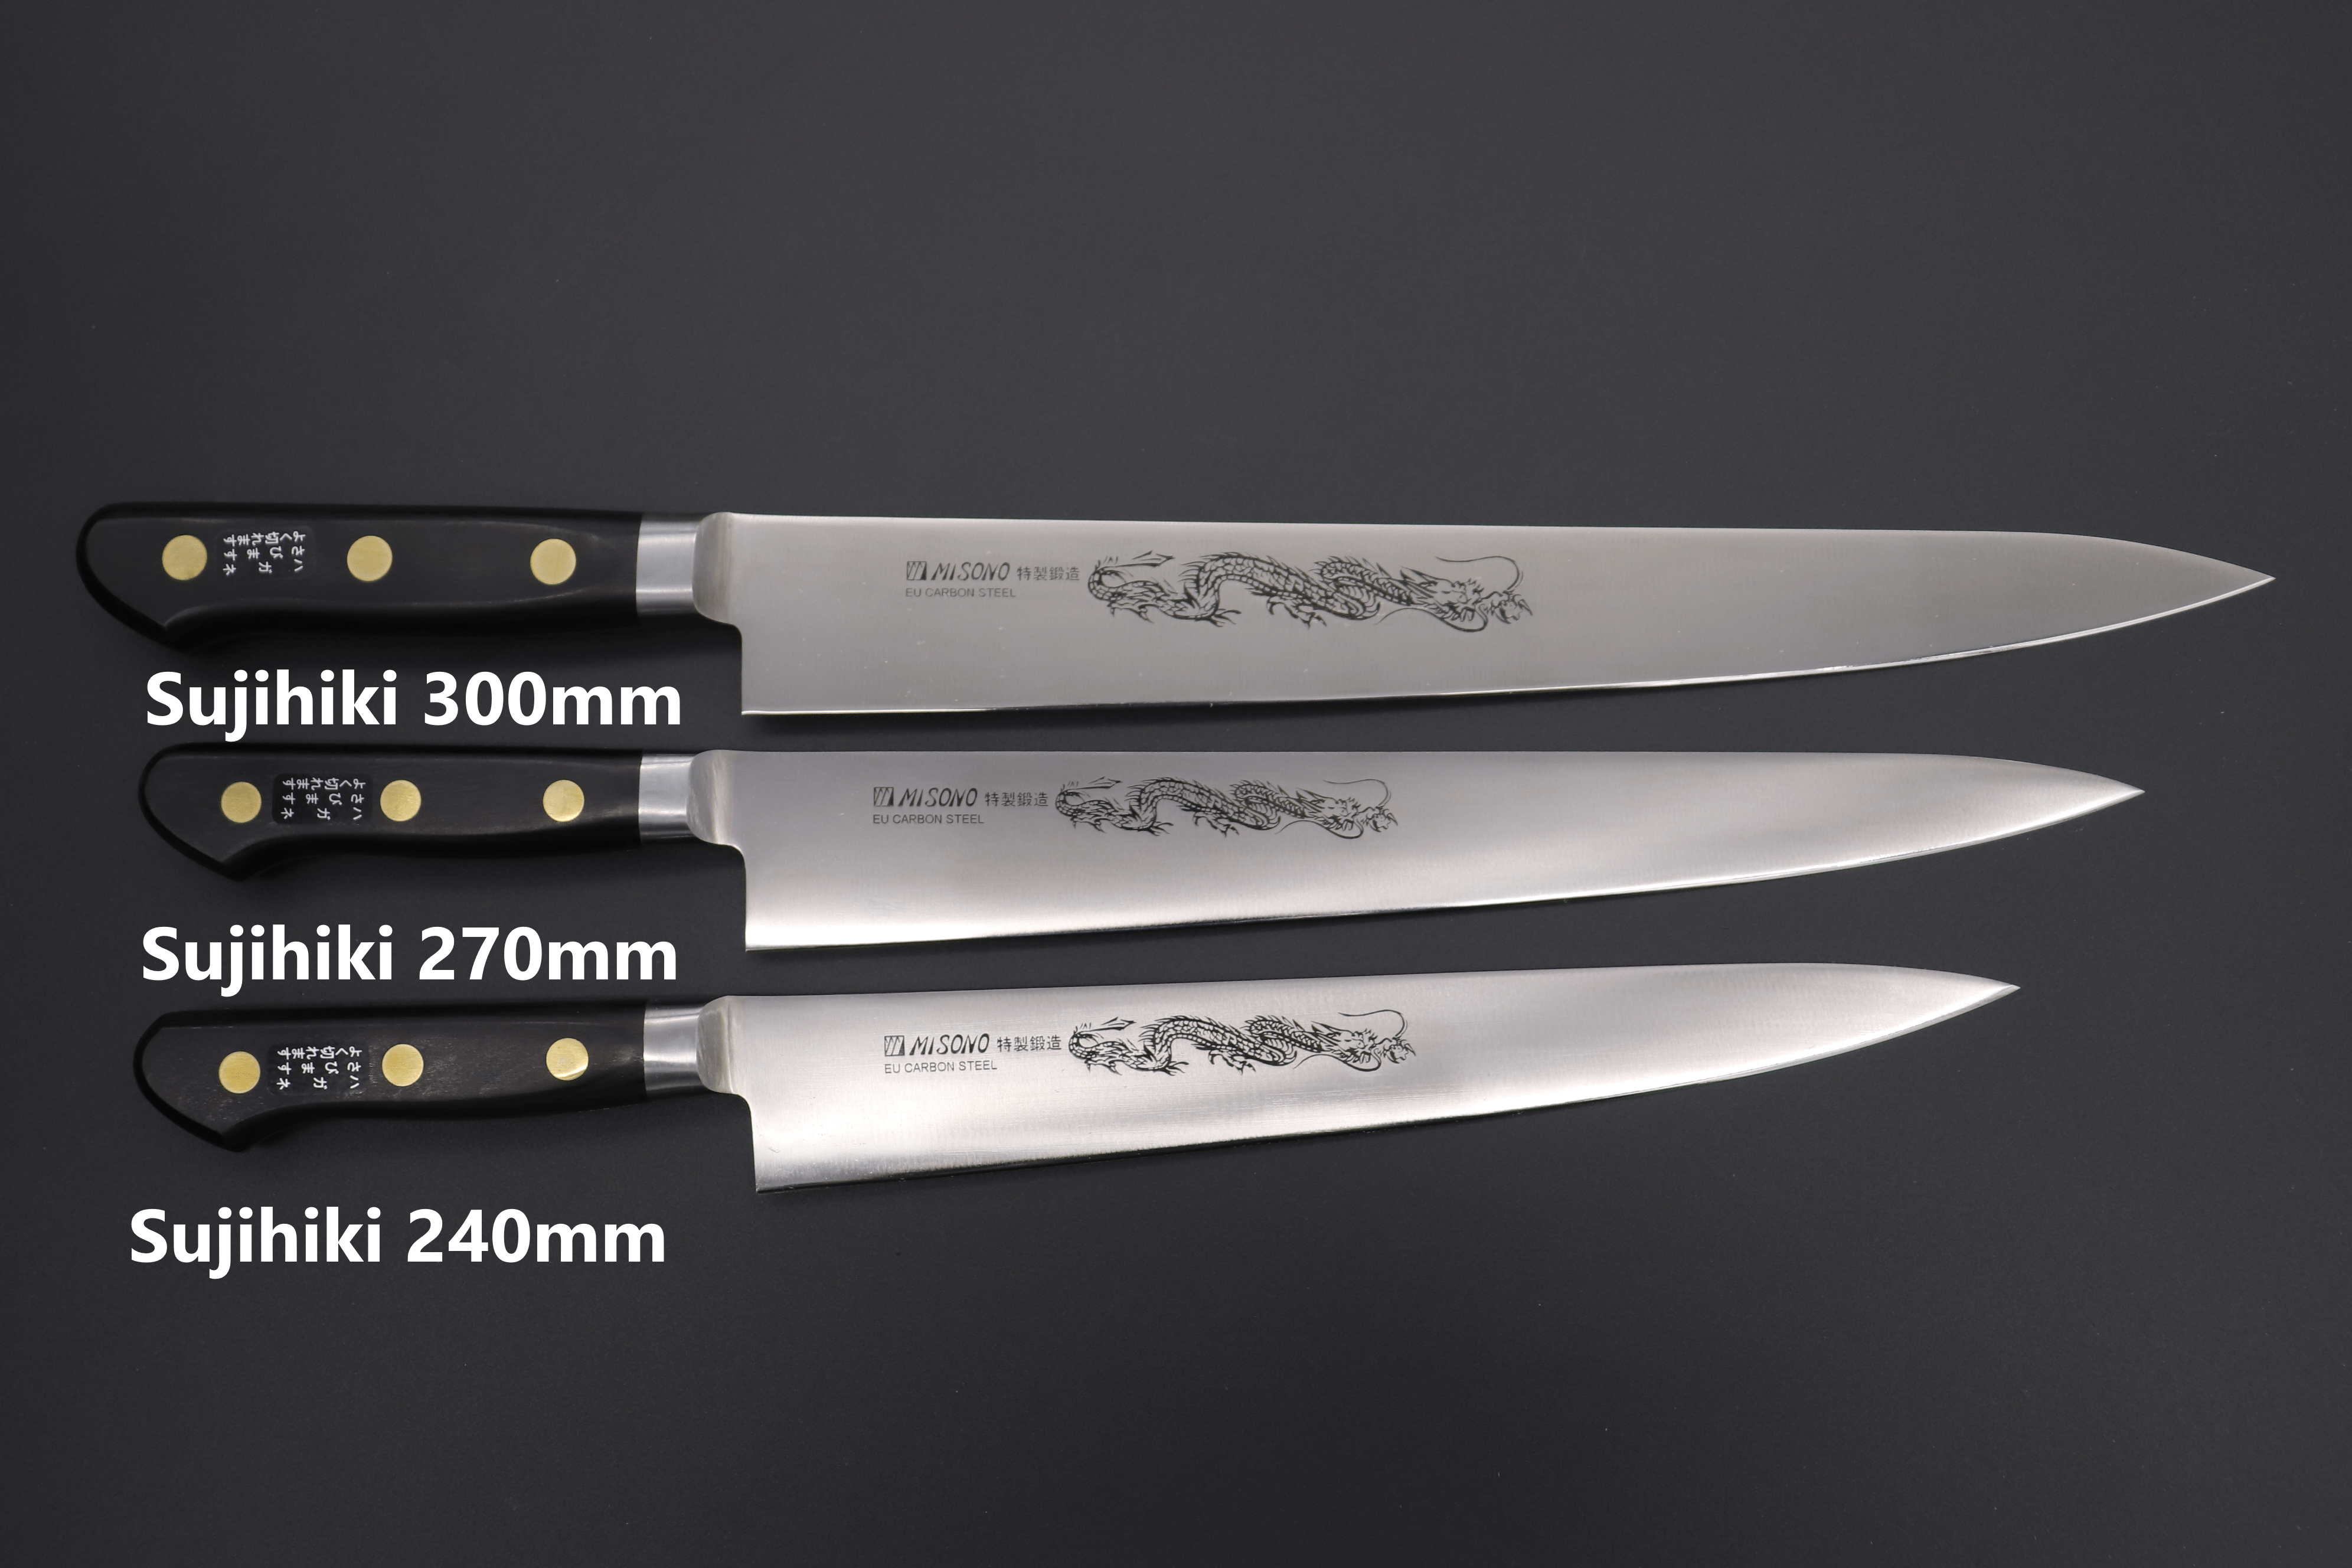 https://japanesechefsknife.com/cdn/shop/files/misono-sujihiki-misono-sweden-steel-series-sujihiki-240mm-to-360mm-5-sizes-42594849095963.png?v=1693980689